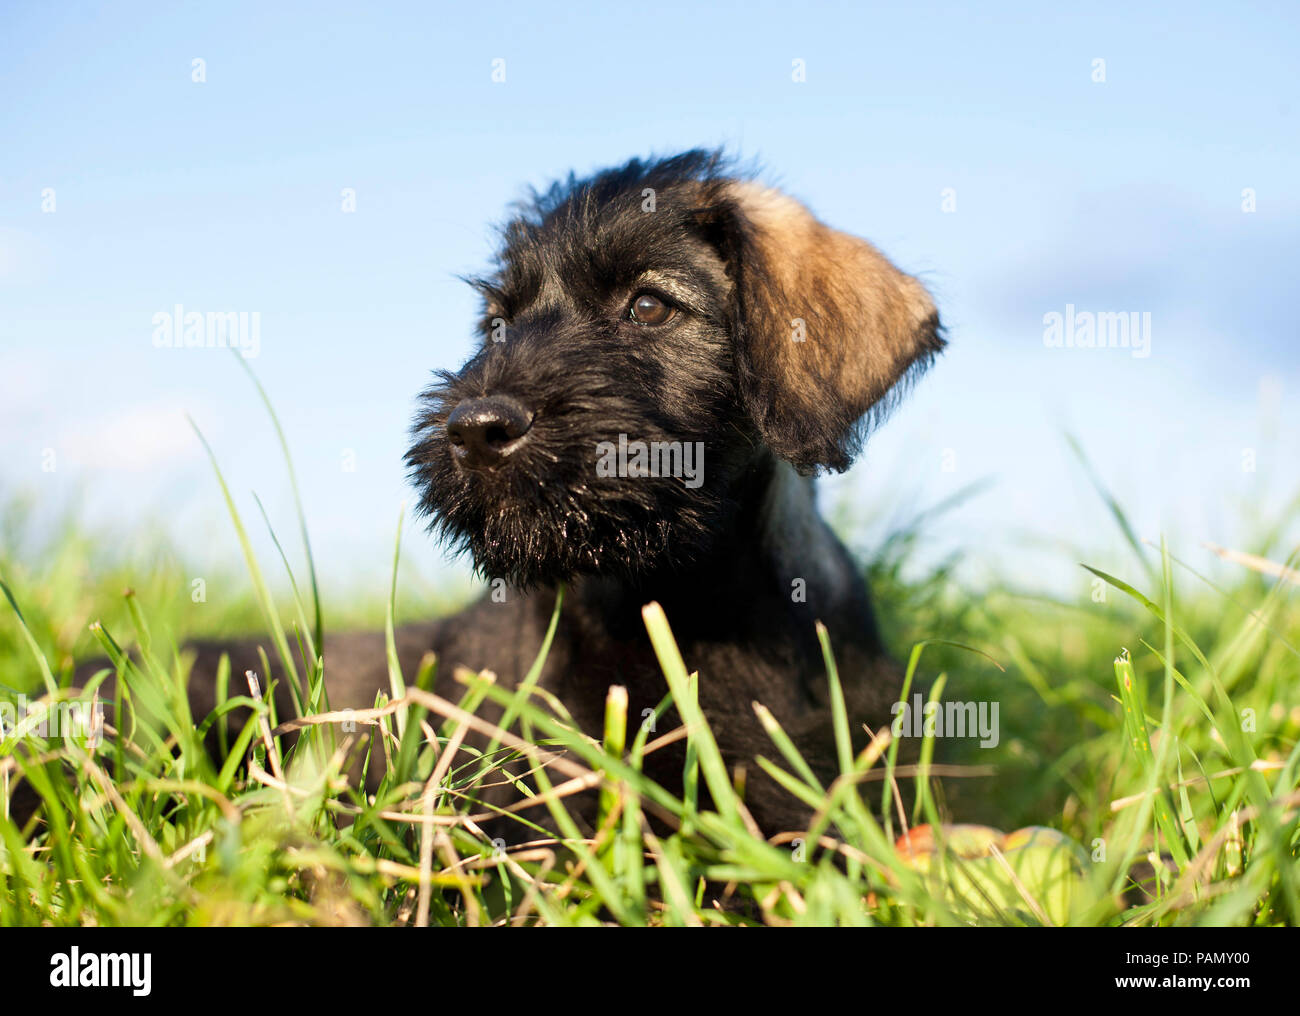 Giant Schnauzer. Puppy lying on a meadow. Germany Stock Photo